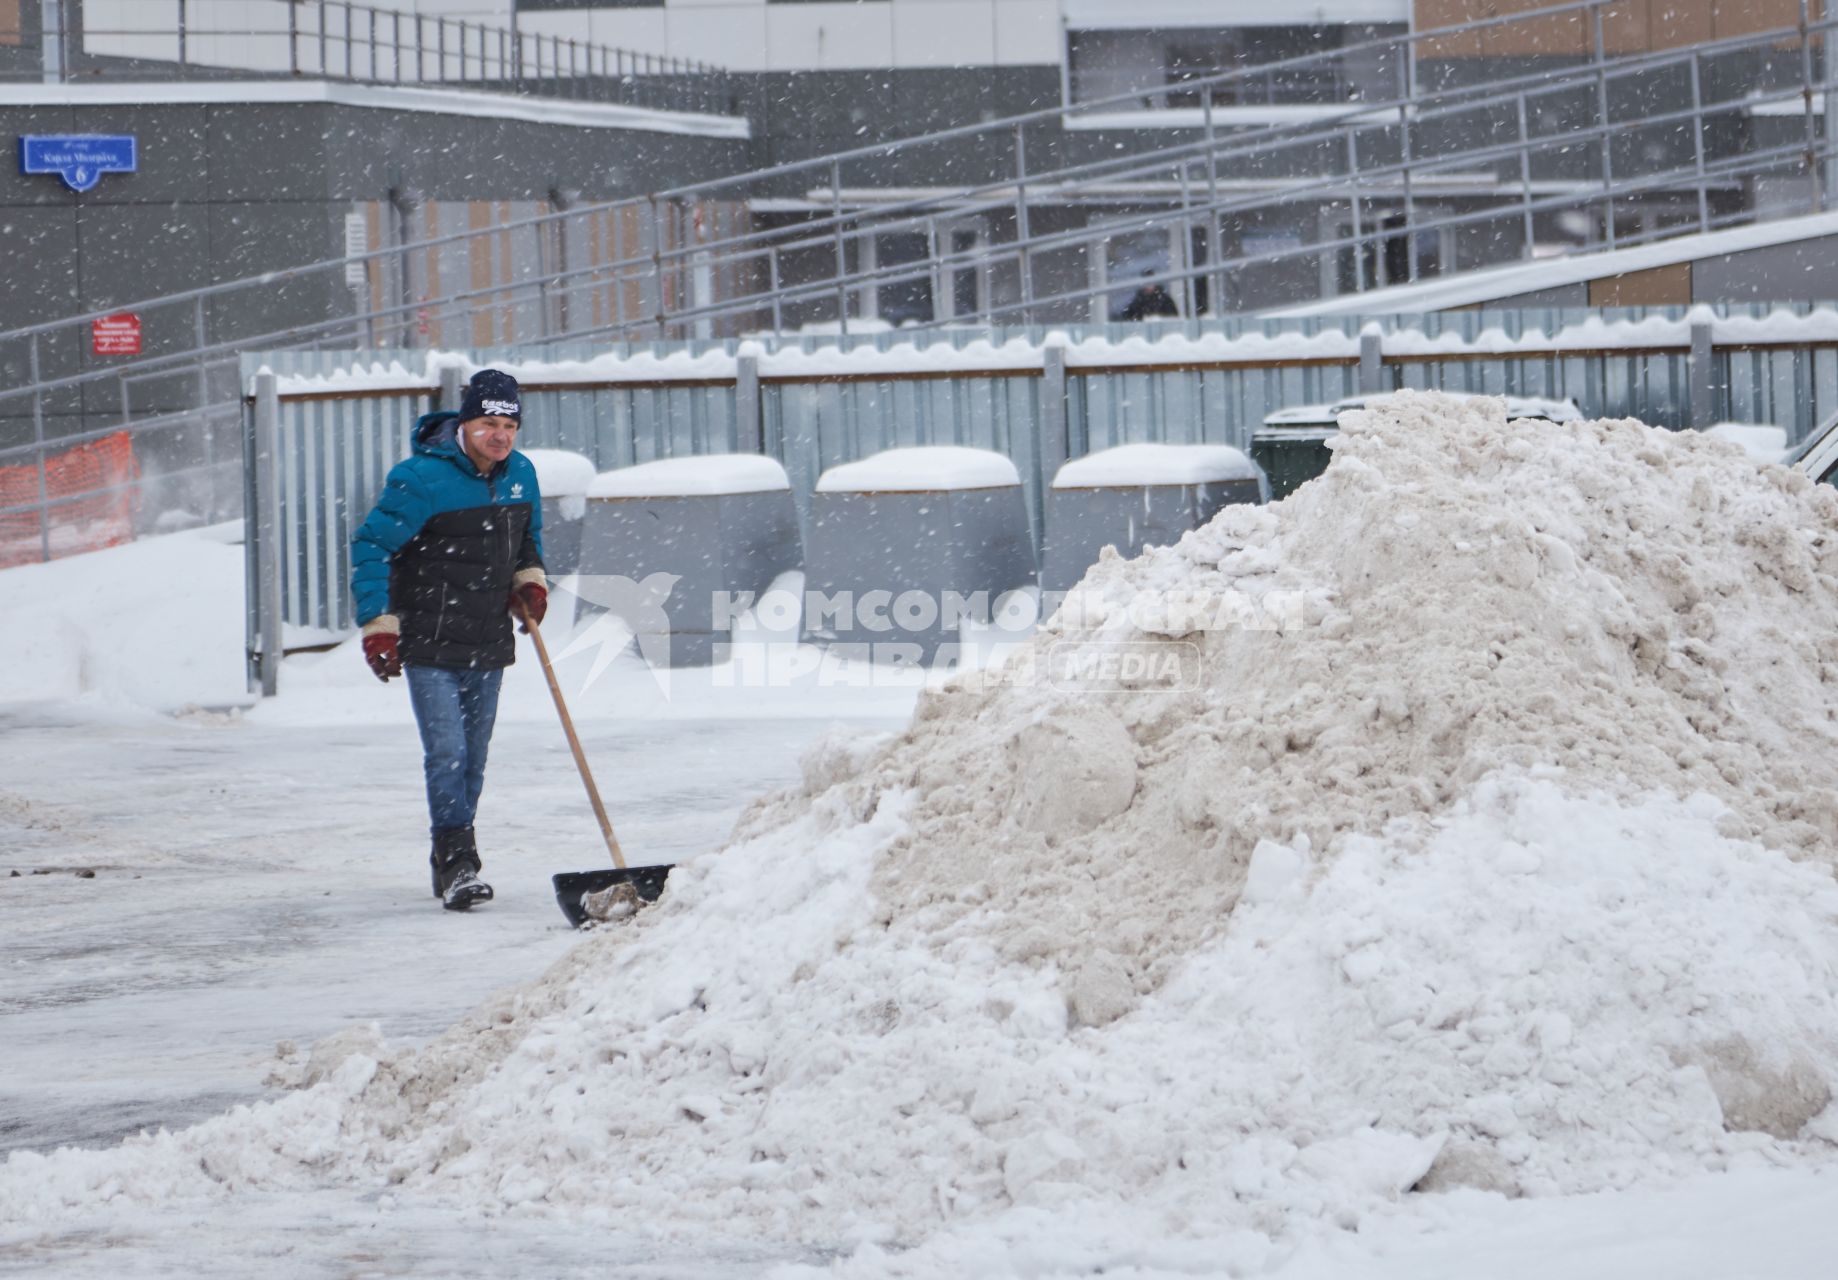 Пермь. Сотрудник коммунальных служб убирает снег.